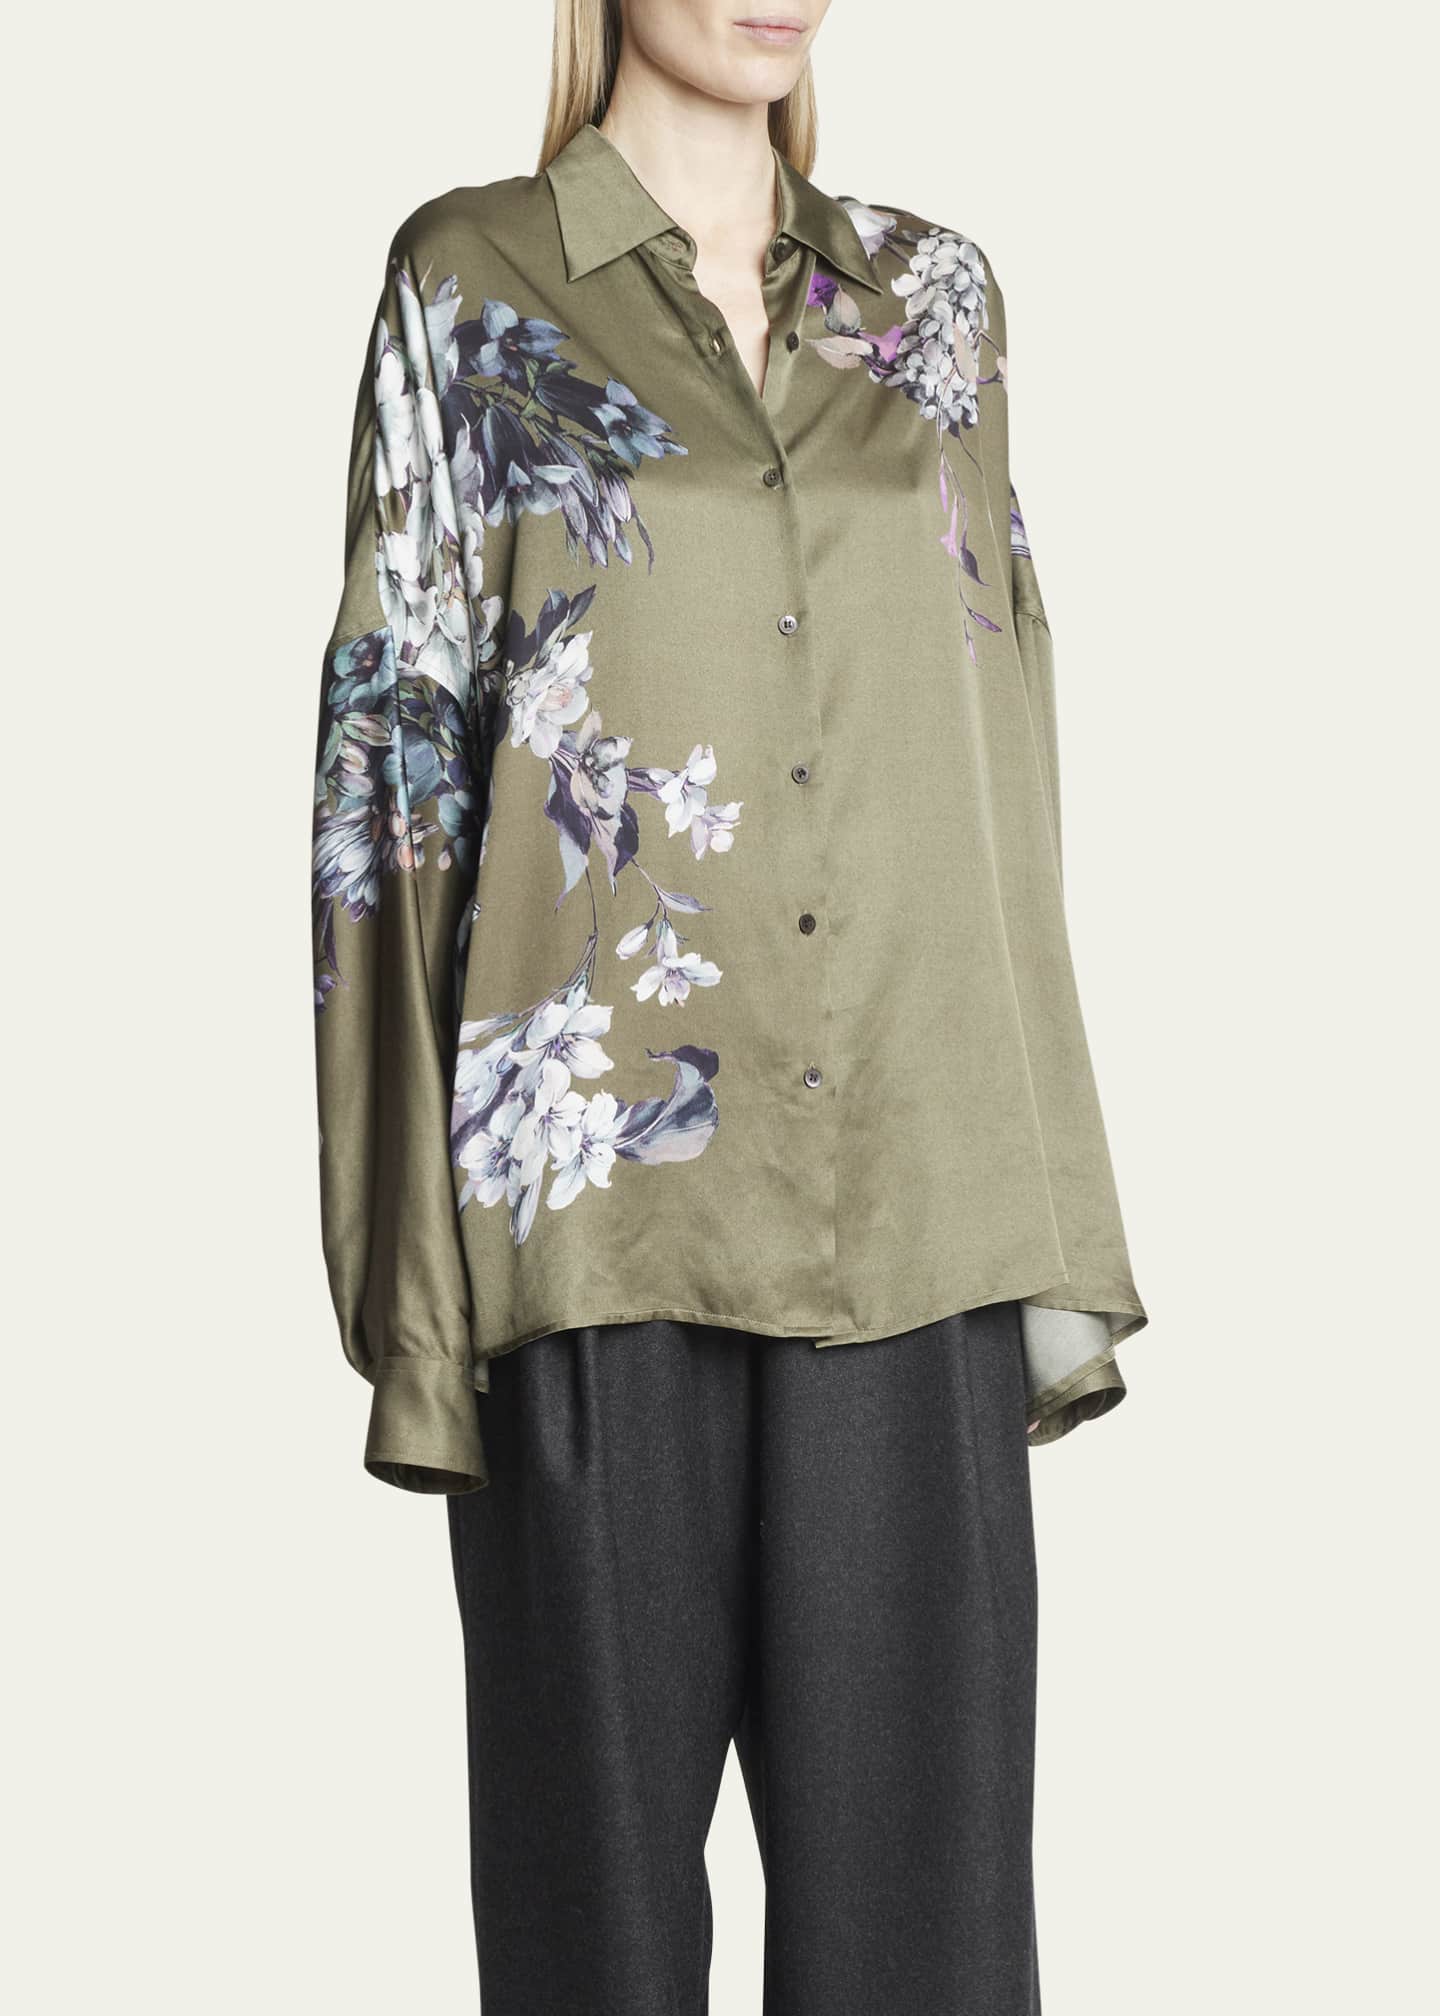 Dries Van Noten Casia Floral Oversized Button Up Shirt - Bergdorf Goodman